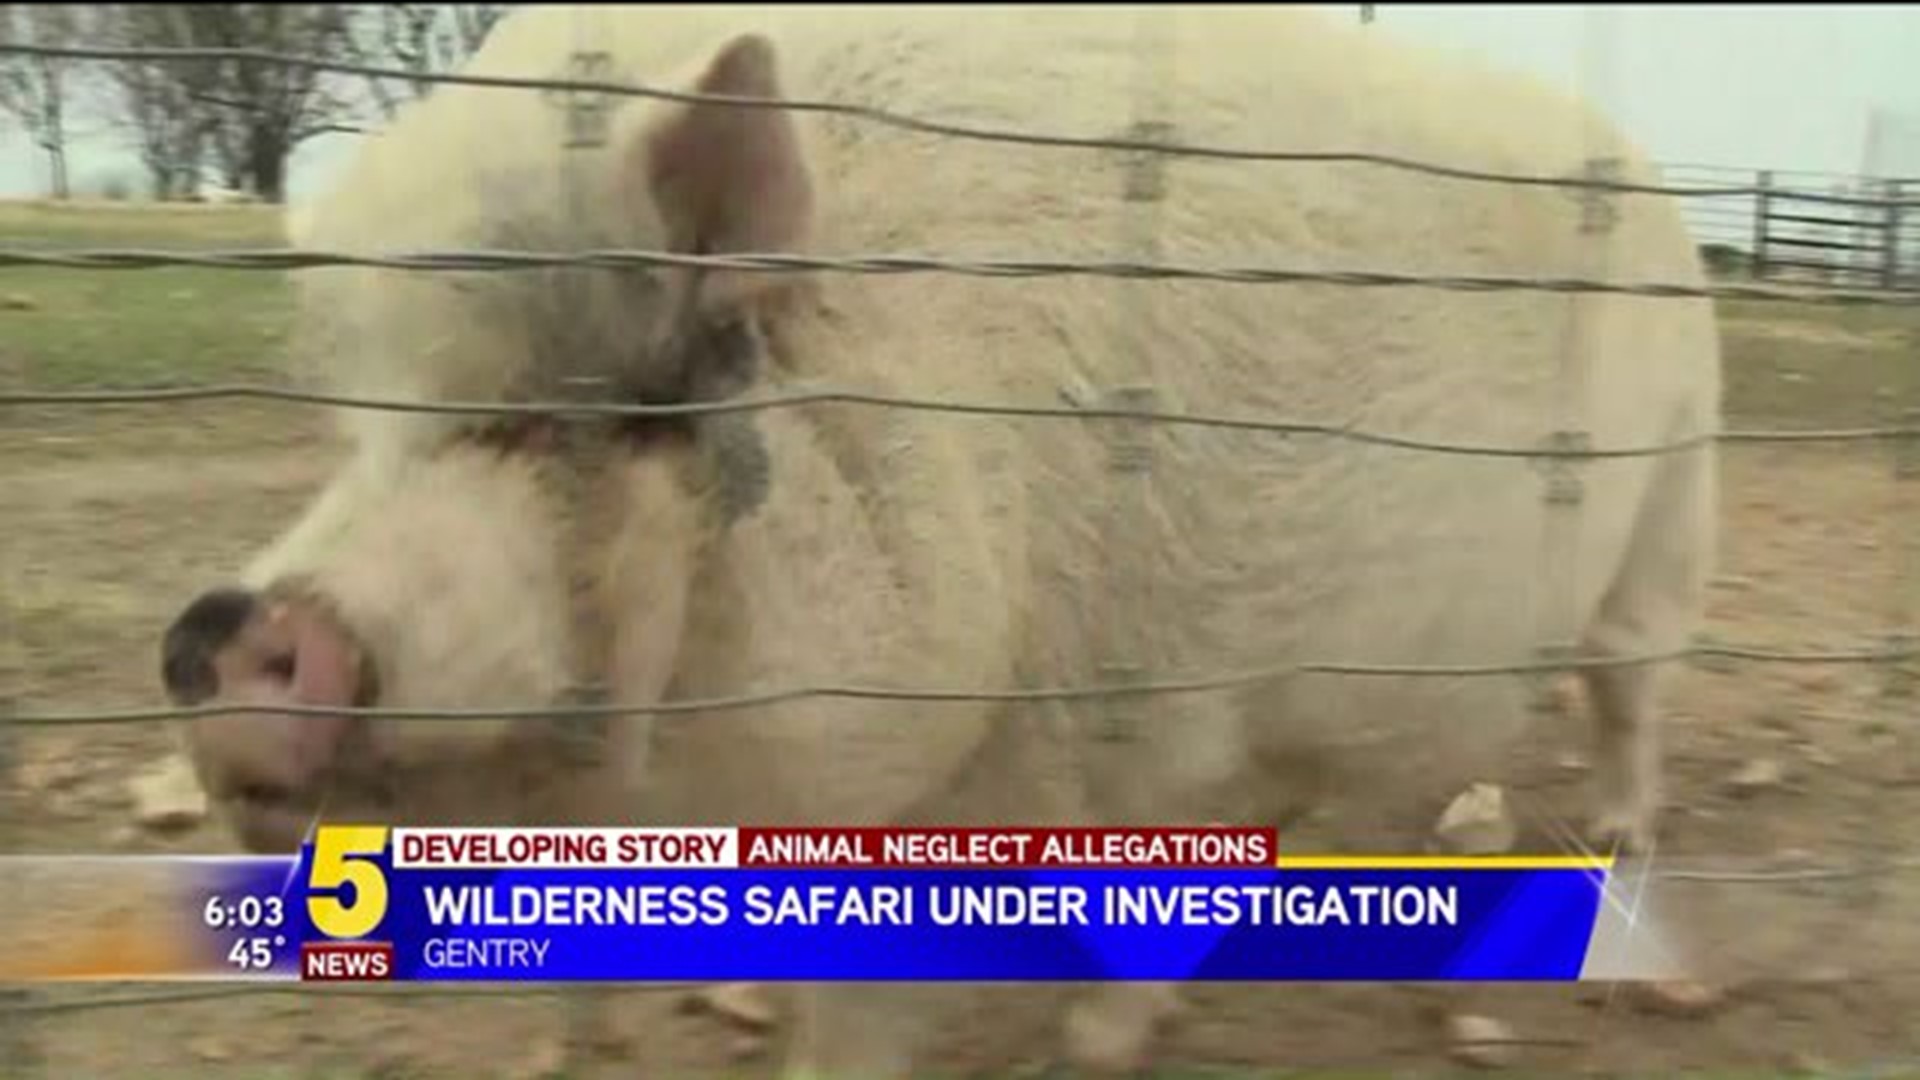 Wilderness Safari Under Investigation